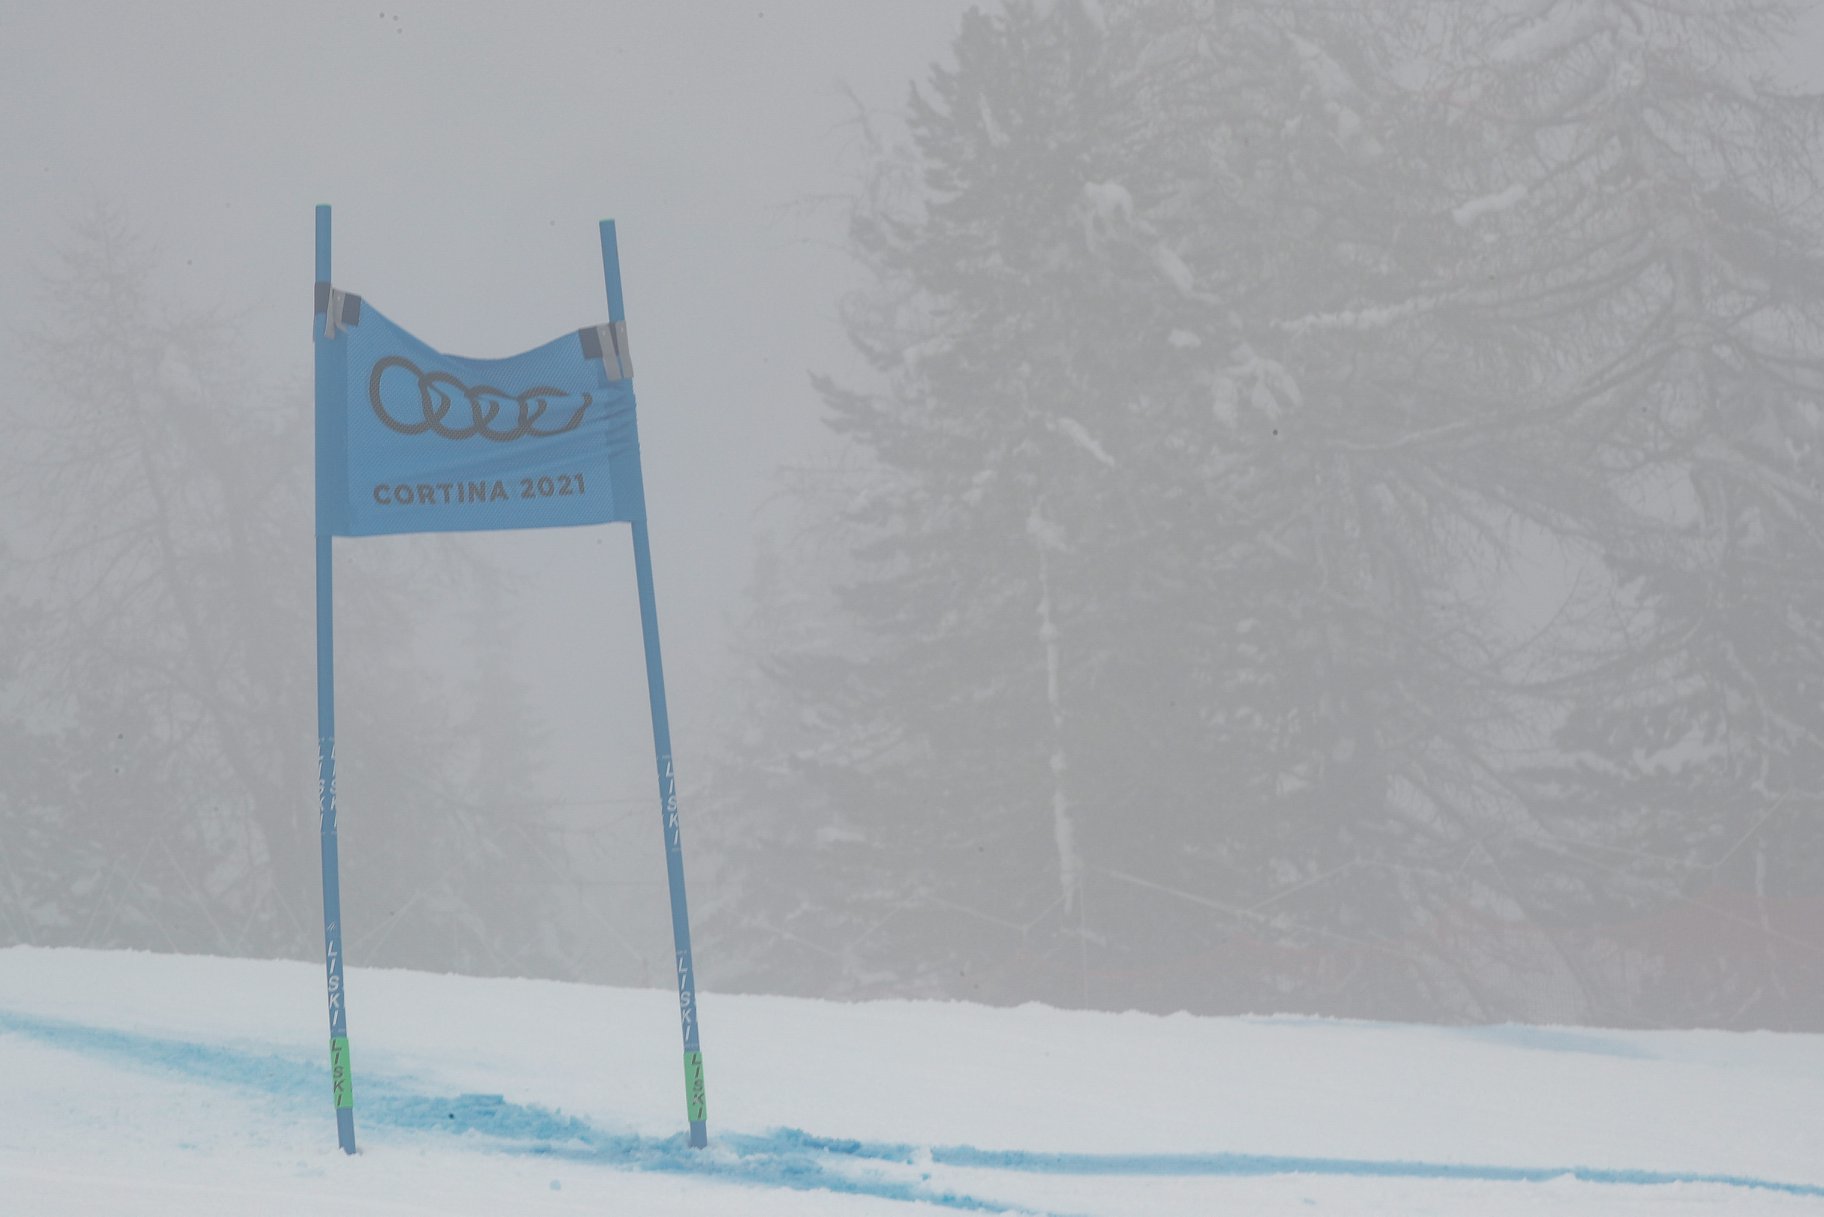 Nuevo programa de carreras de Cortina para los próximos días tras las últimas cancelaciones